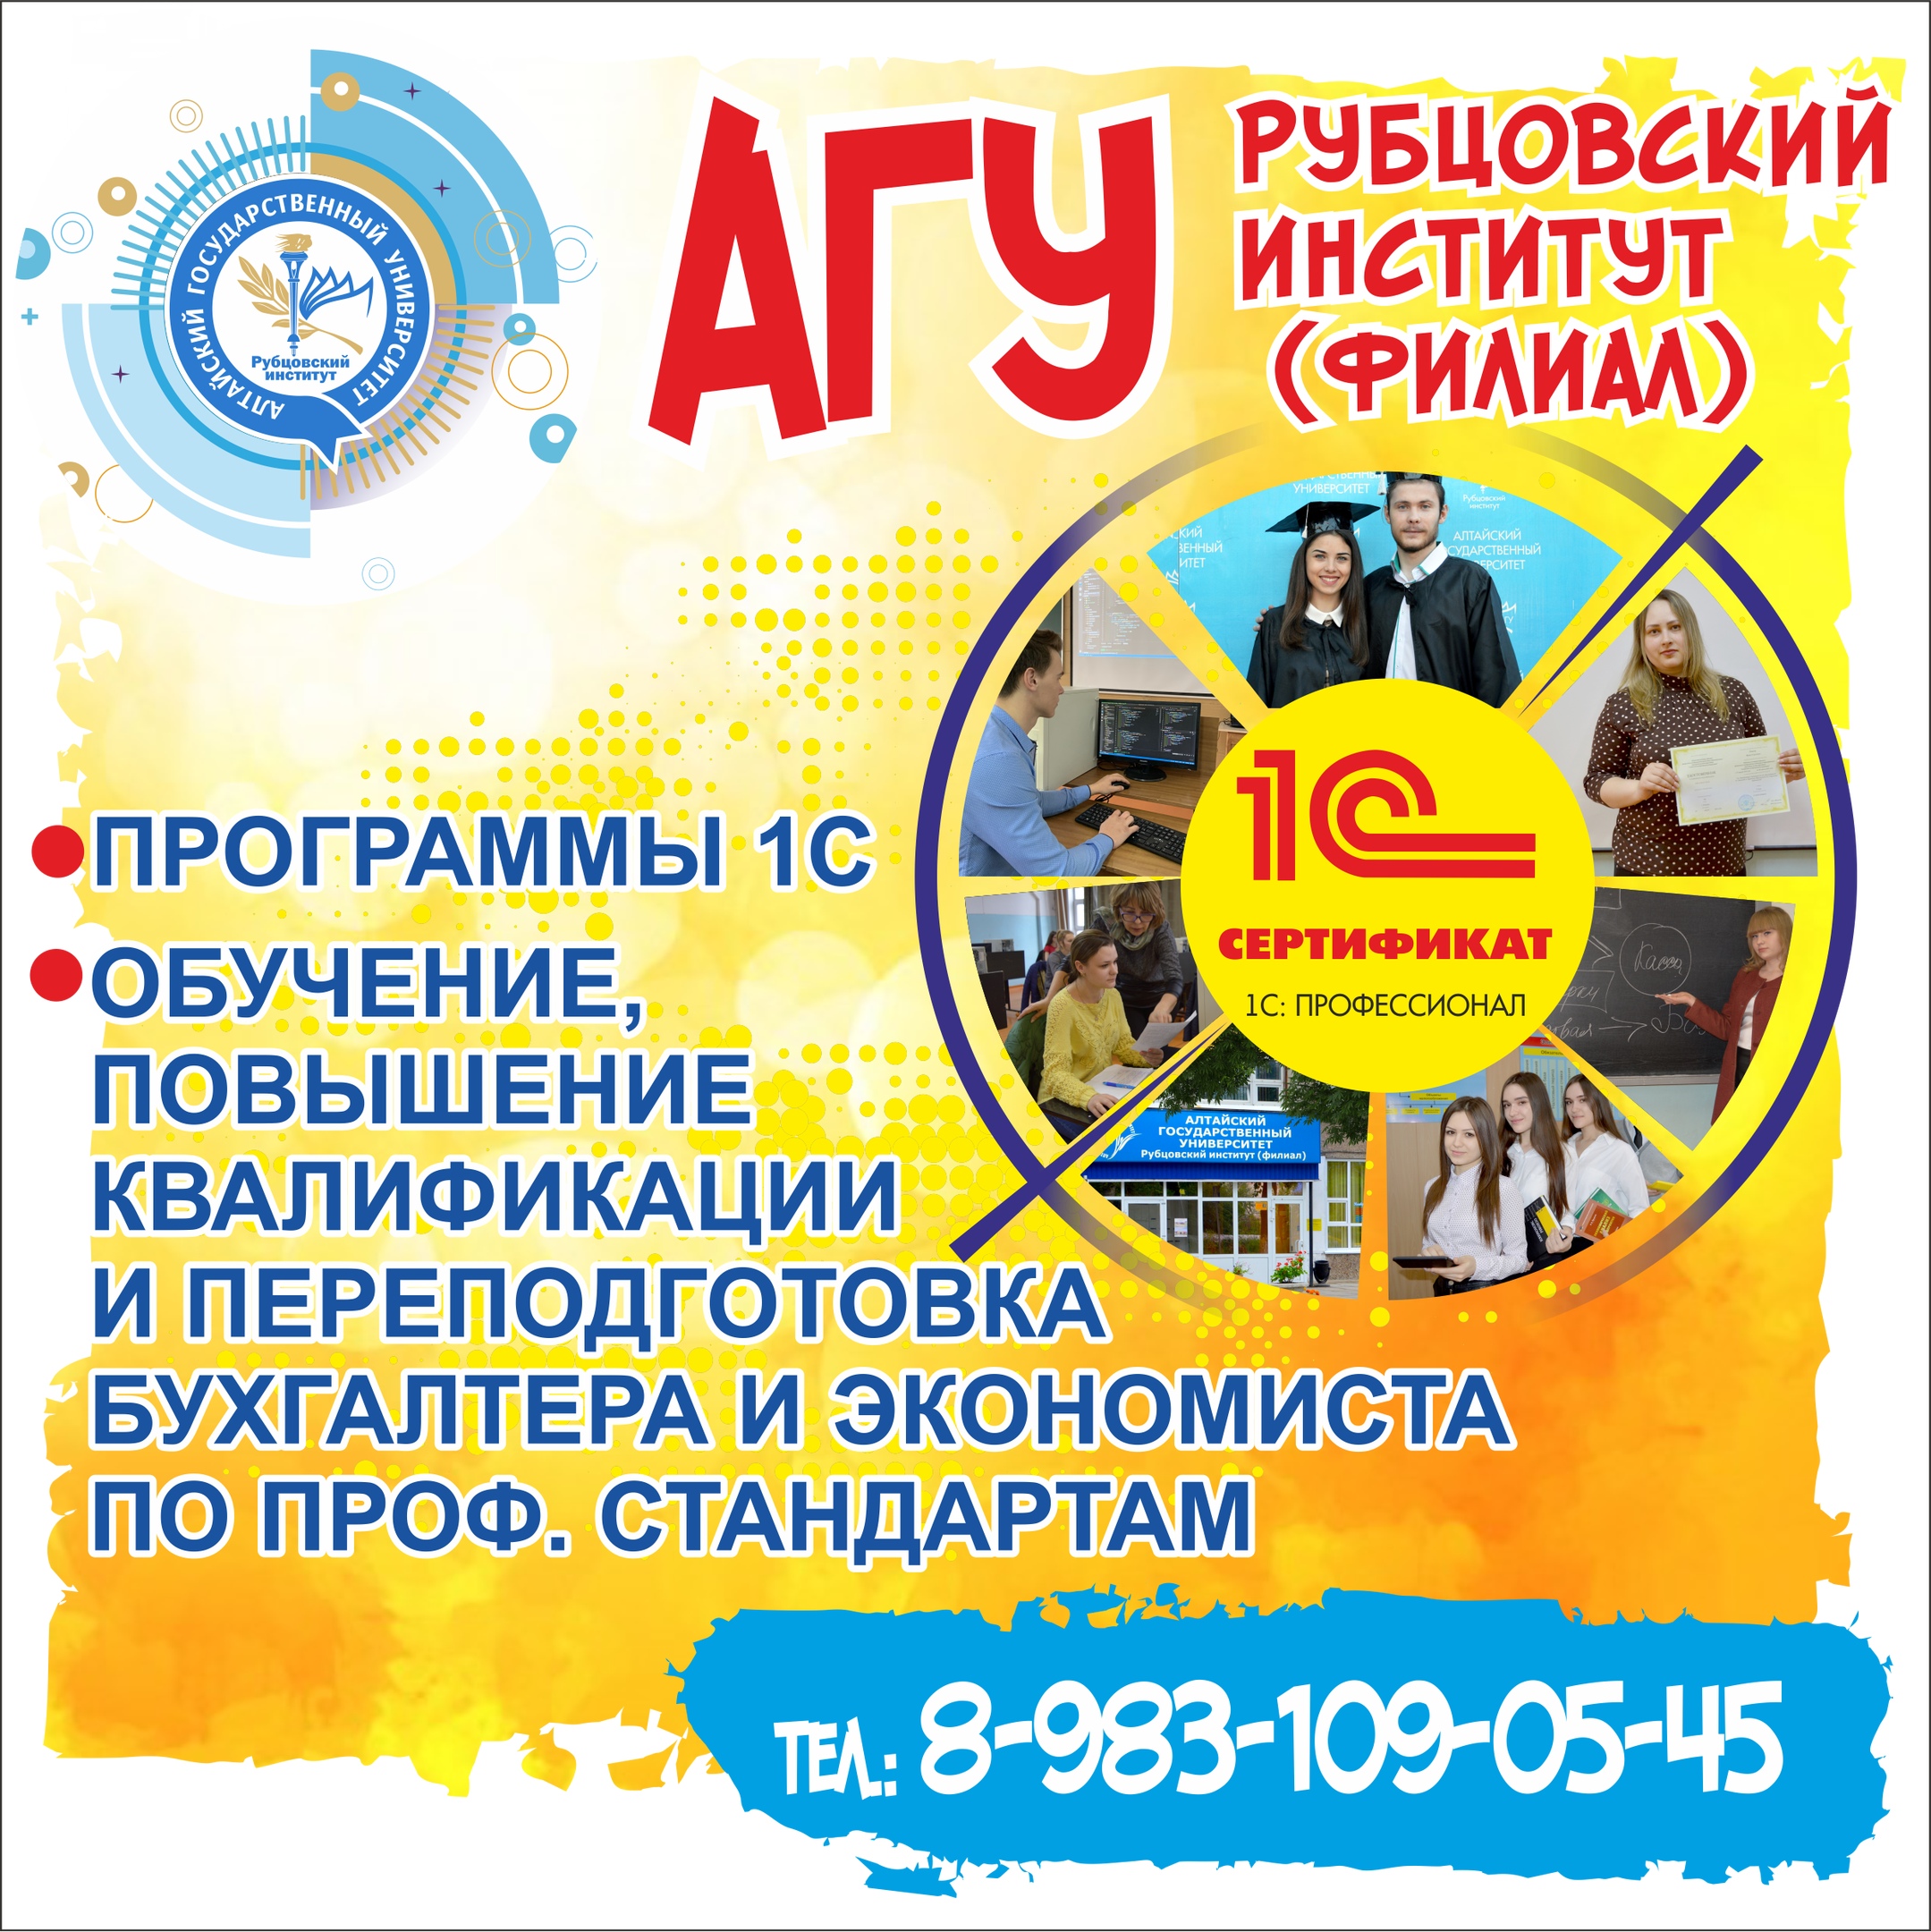 Центр сертифицированного обучения при Рубцовском институте (филиале) АлтГУ приглашает на занятия